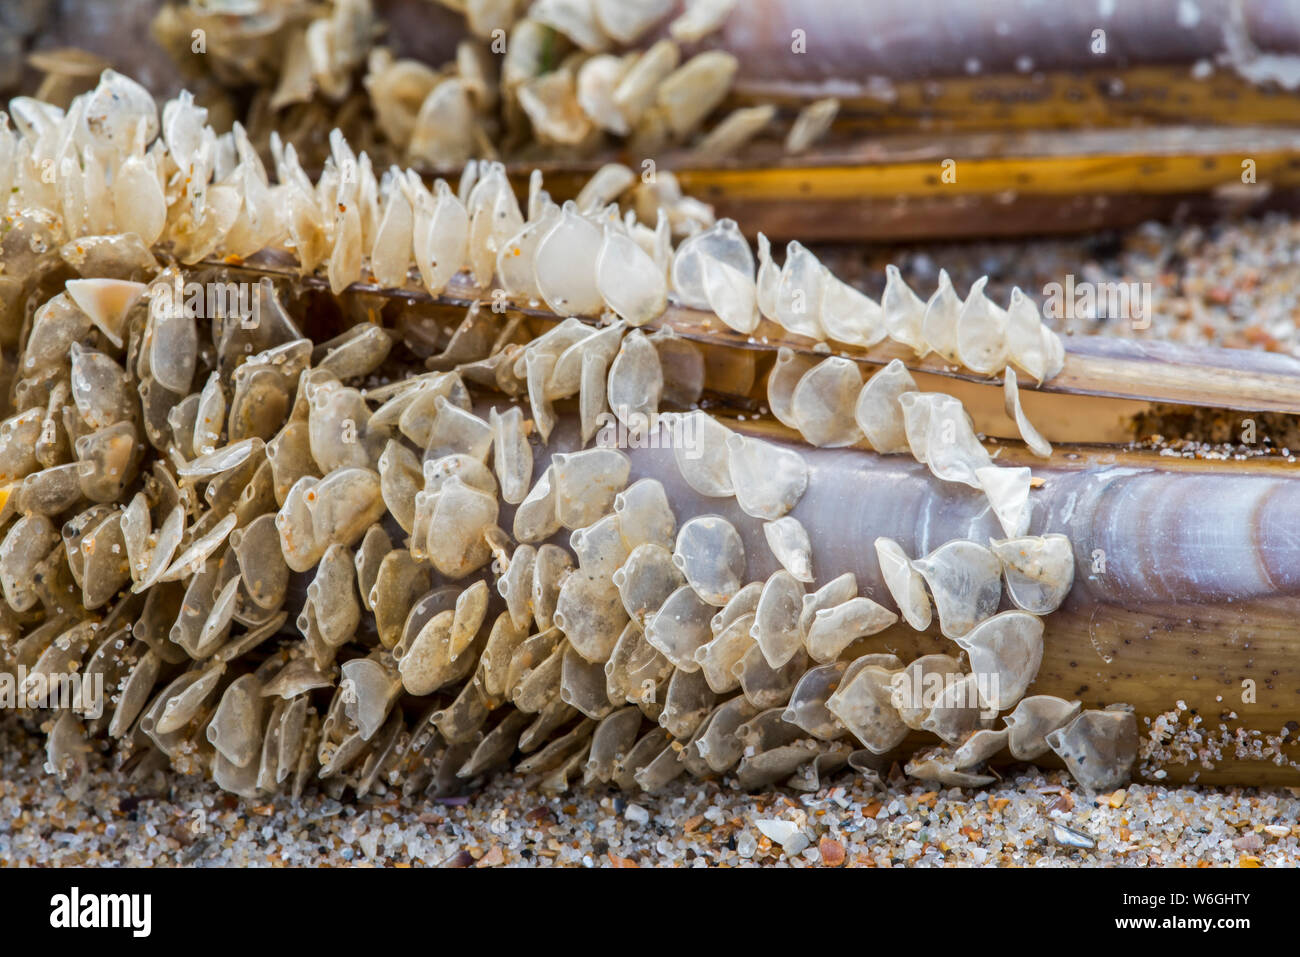 Casi di uovo / uova di cane reticolare Buccino (Tritia reticulata / Nassarius reticulatus / Hinia reticulata), marine molluschi gasteropodi, si è incagliata sulla spiaggia Foto Stock